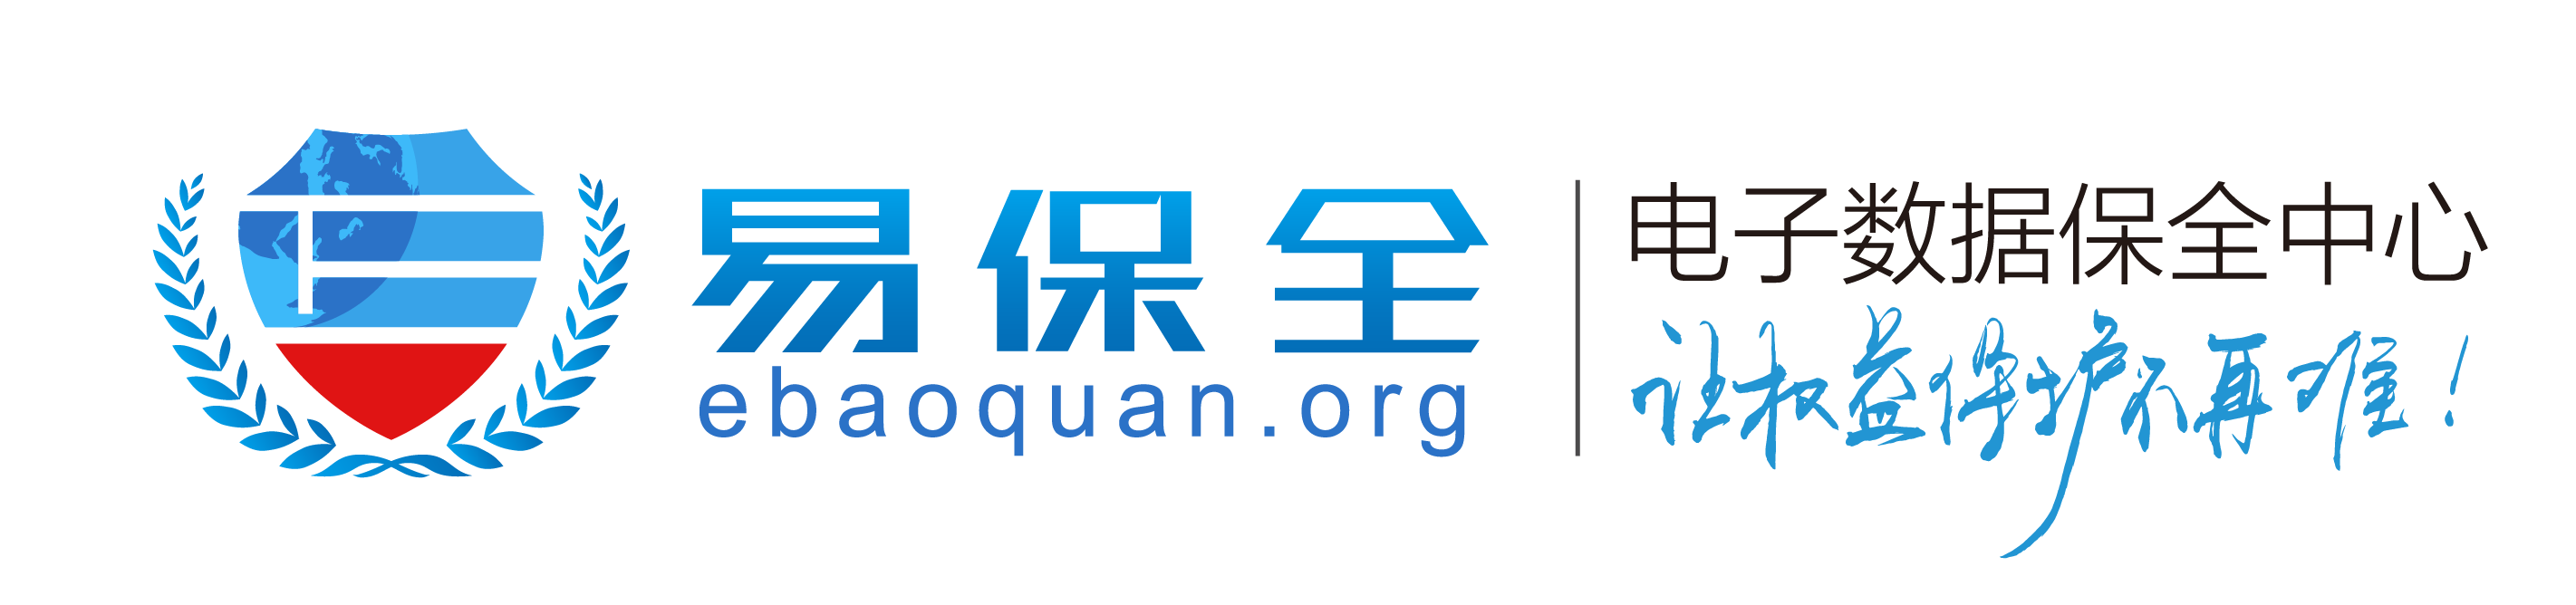 电子保全中心logo